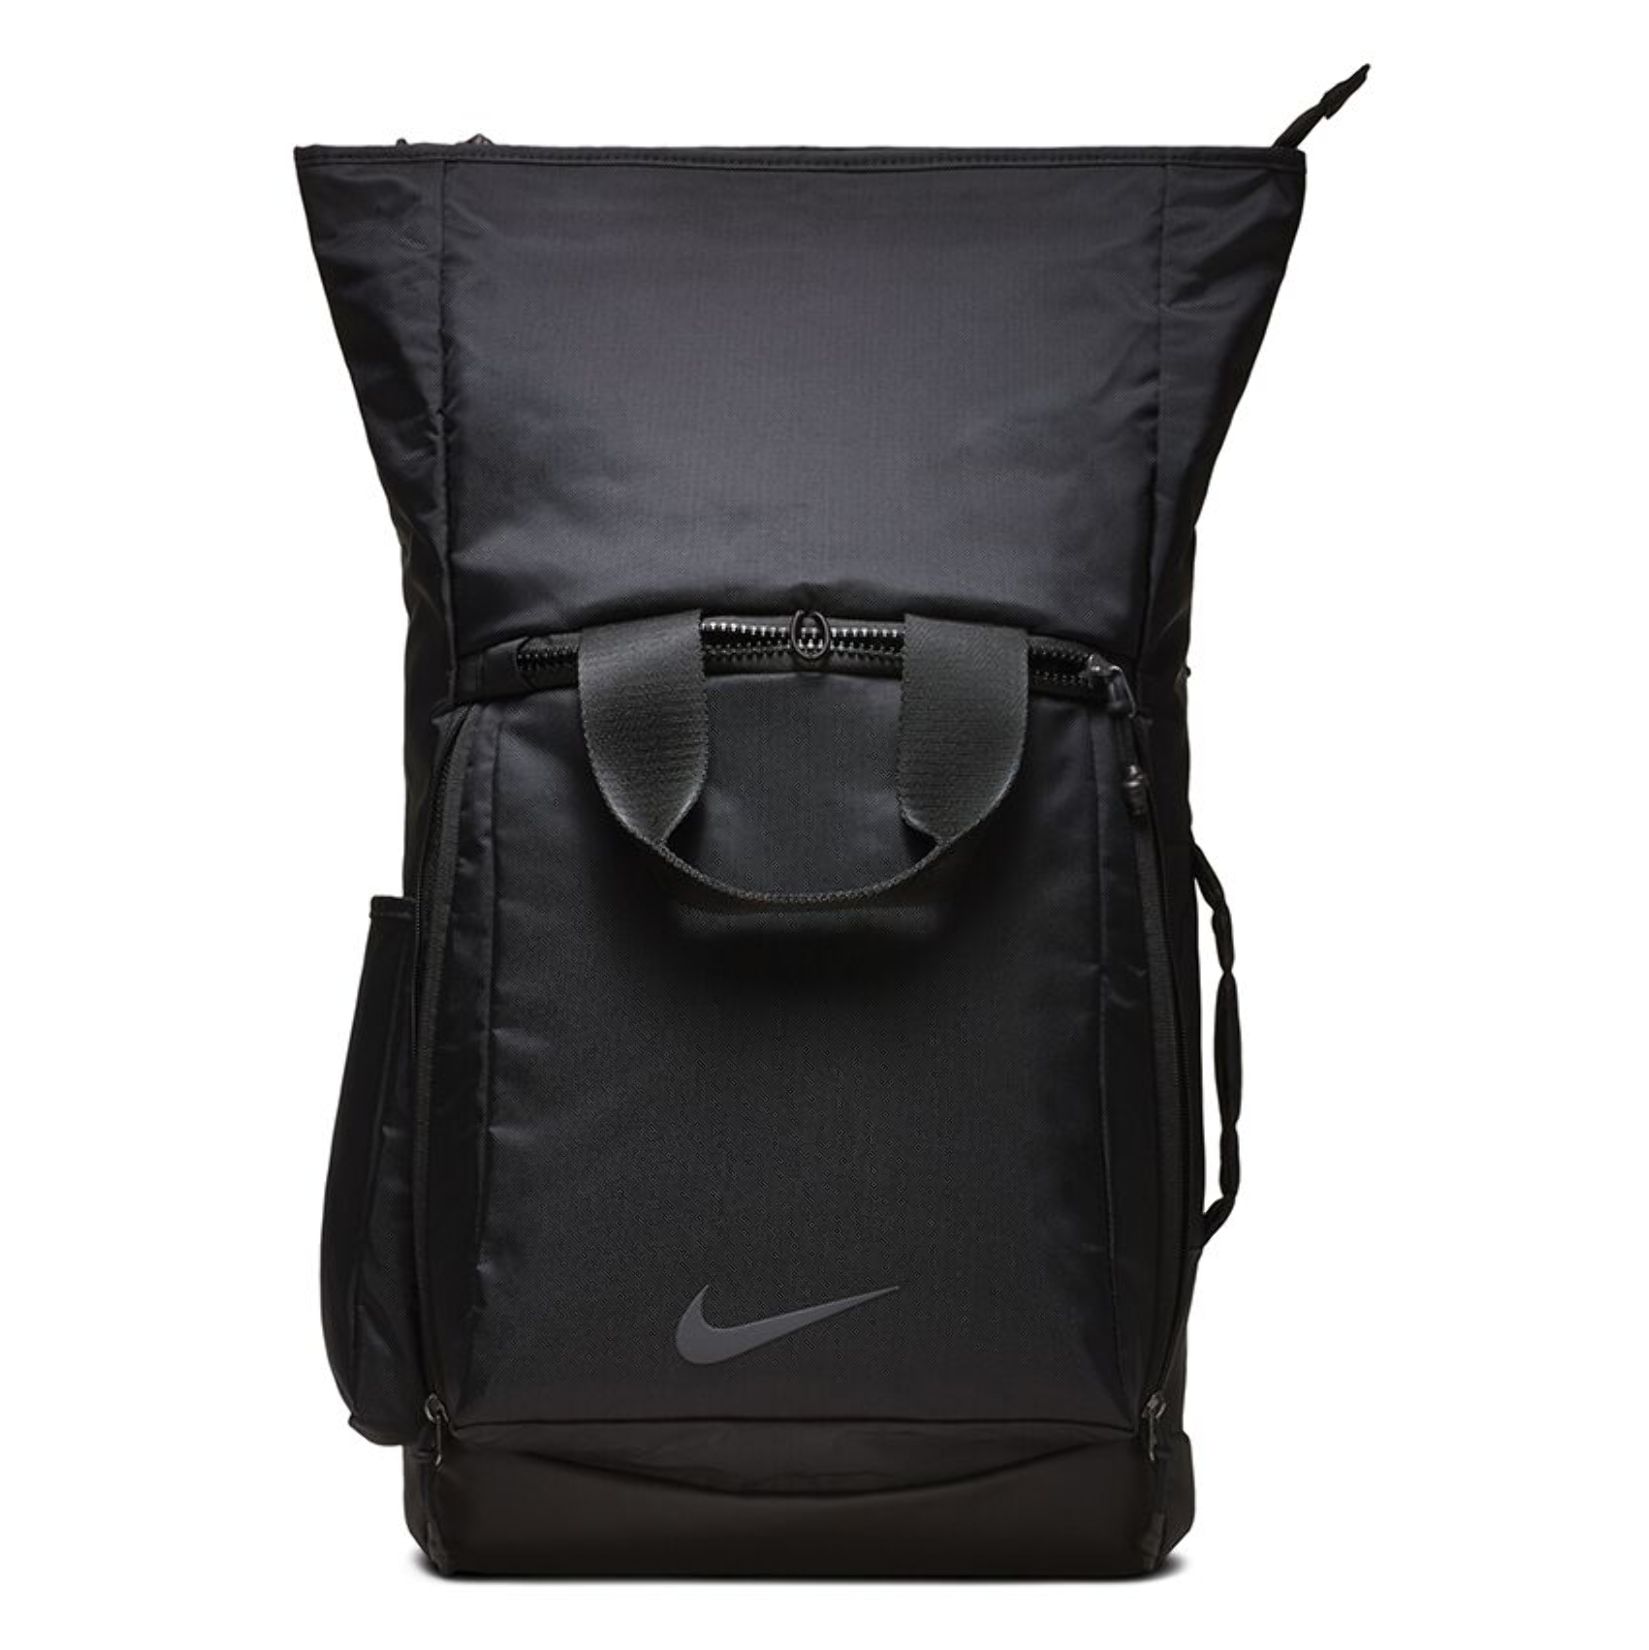 Nike vapor energy 2.0 training backpack - Kitlocker.com